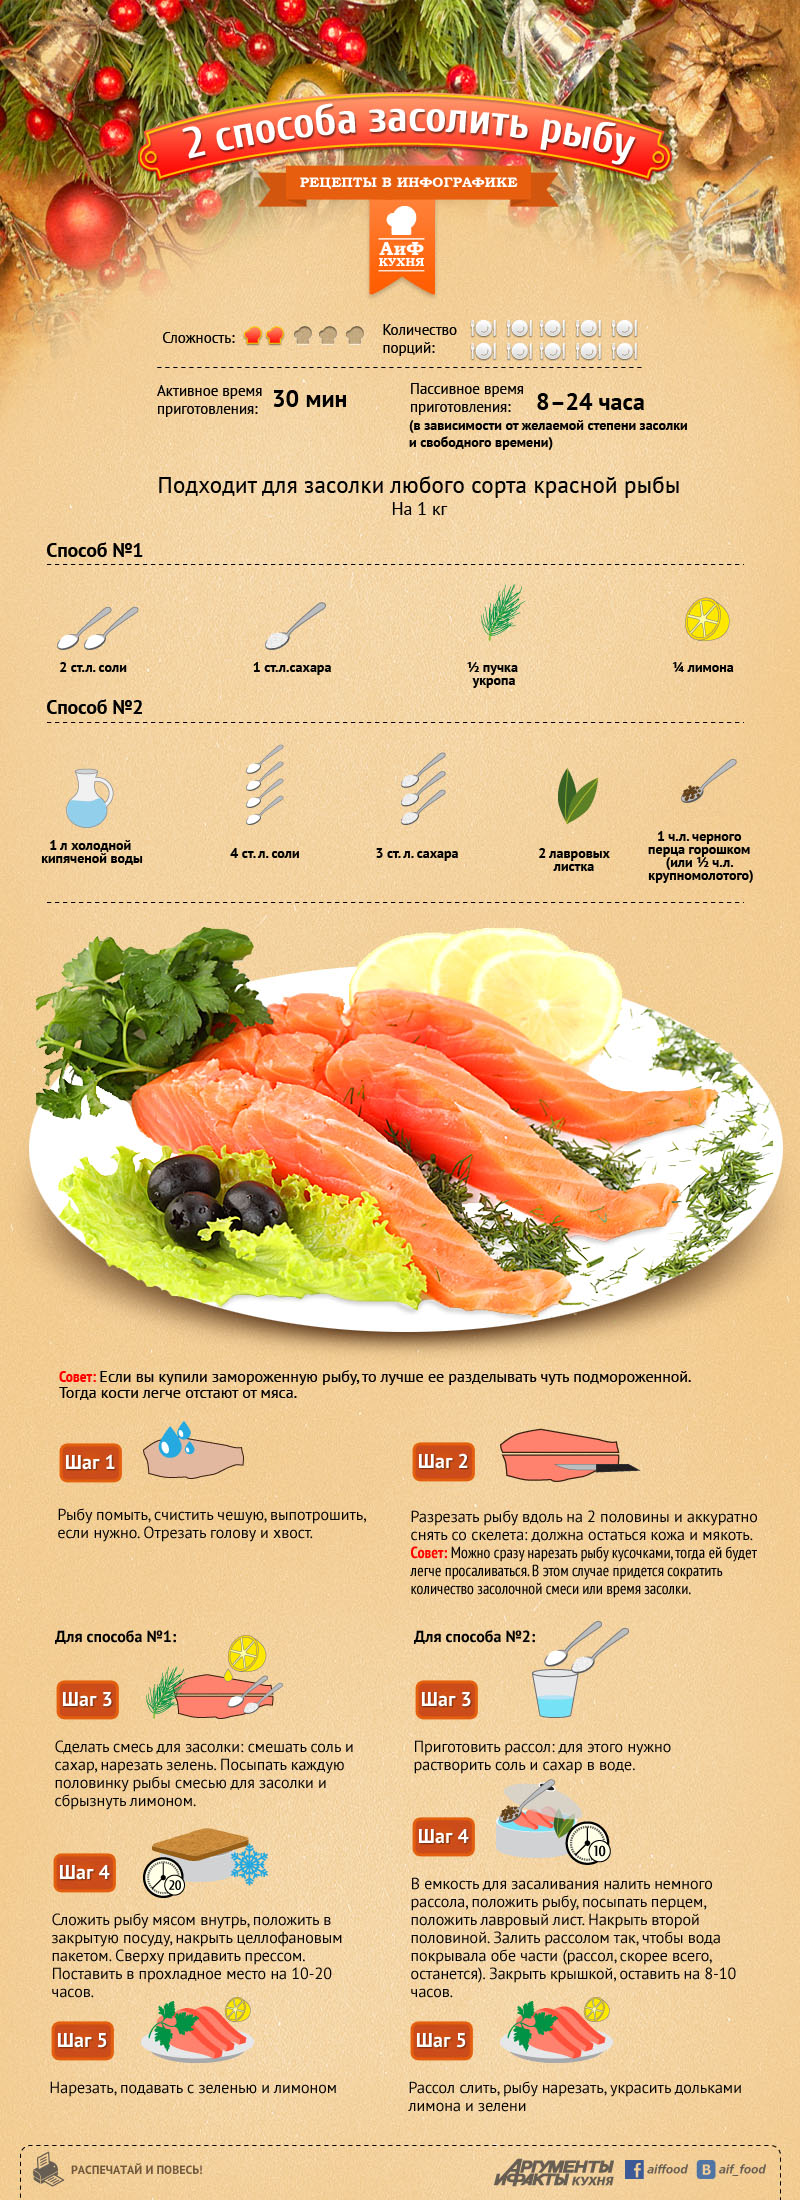 Сколько нужно соли для засолки рыбы красной. Рецепты в инфографике. АИФ кухня рецепты в инфографике. Рецепты в инфографике рыба. Красная рыба в инфографике.